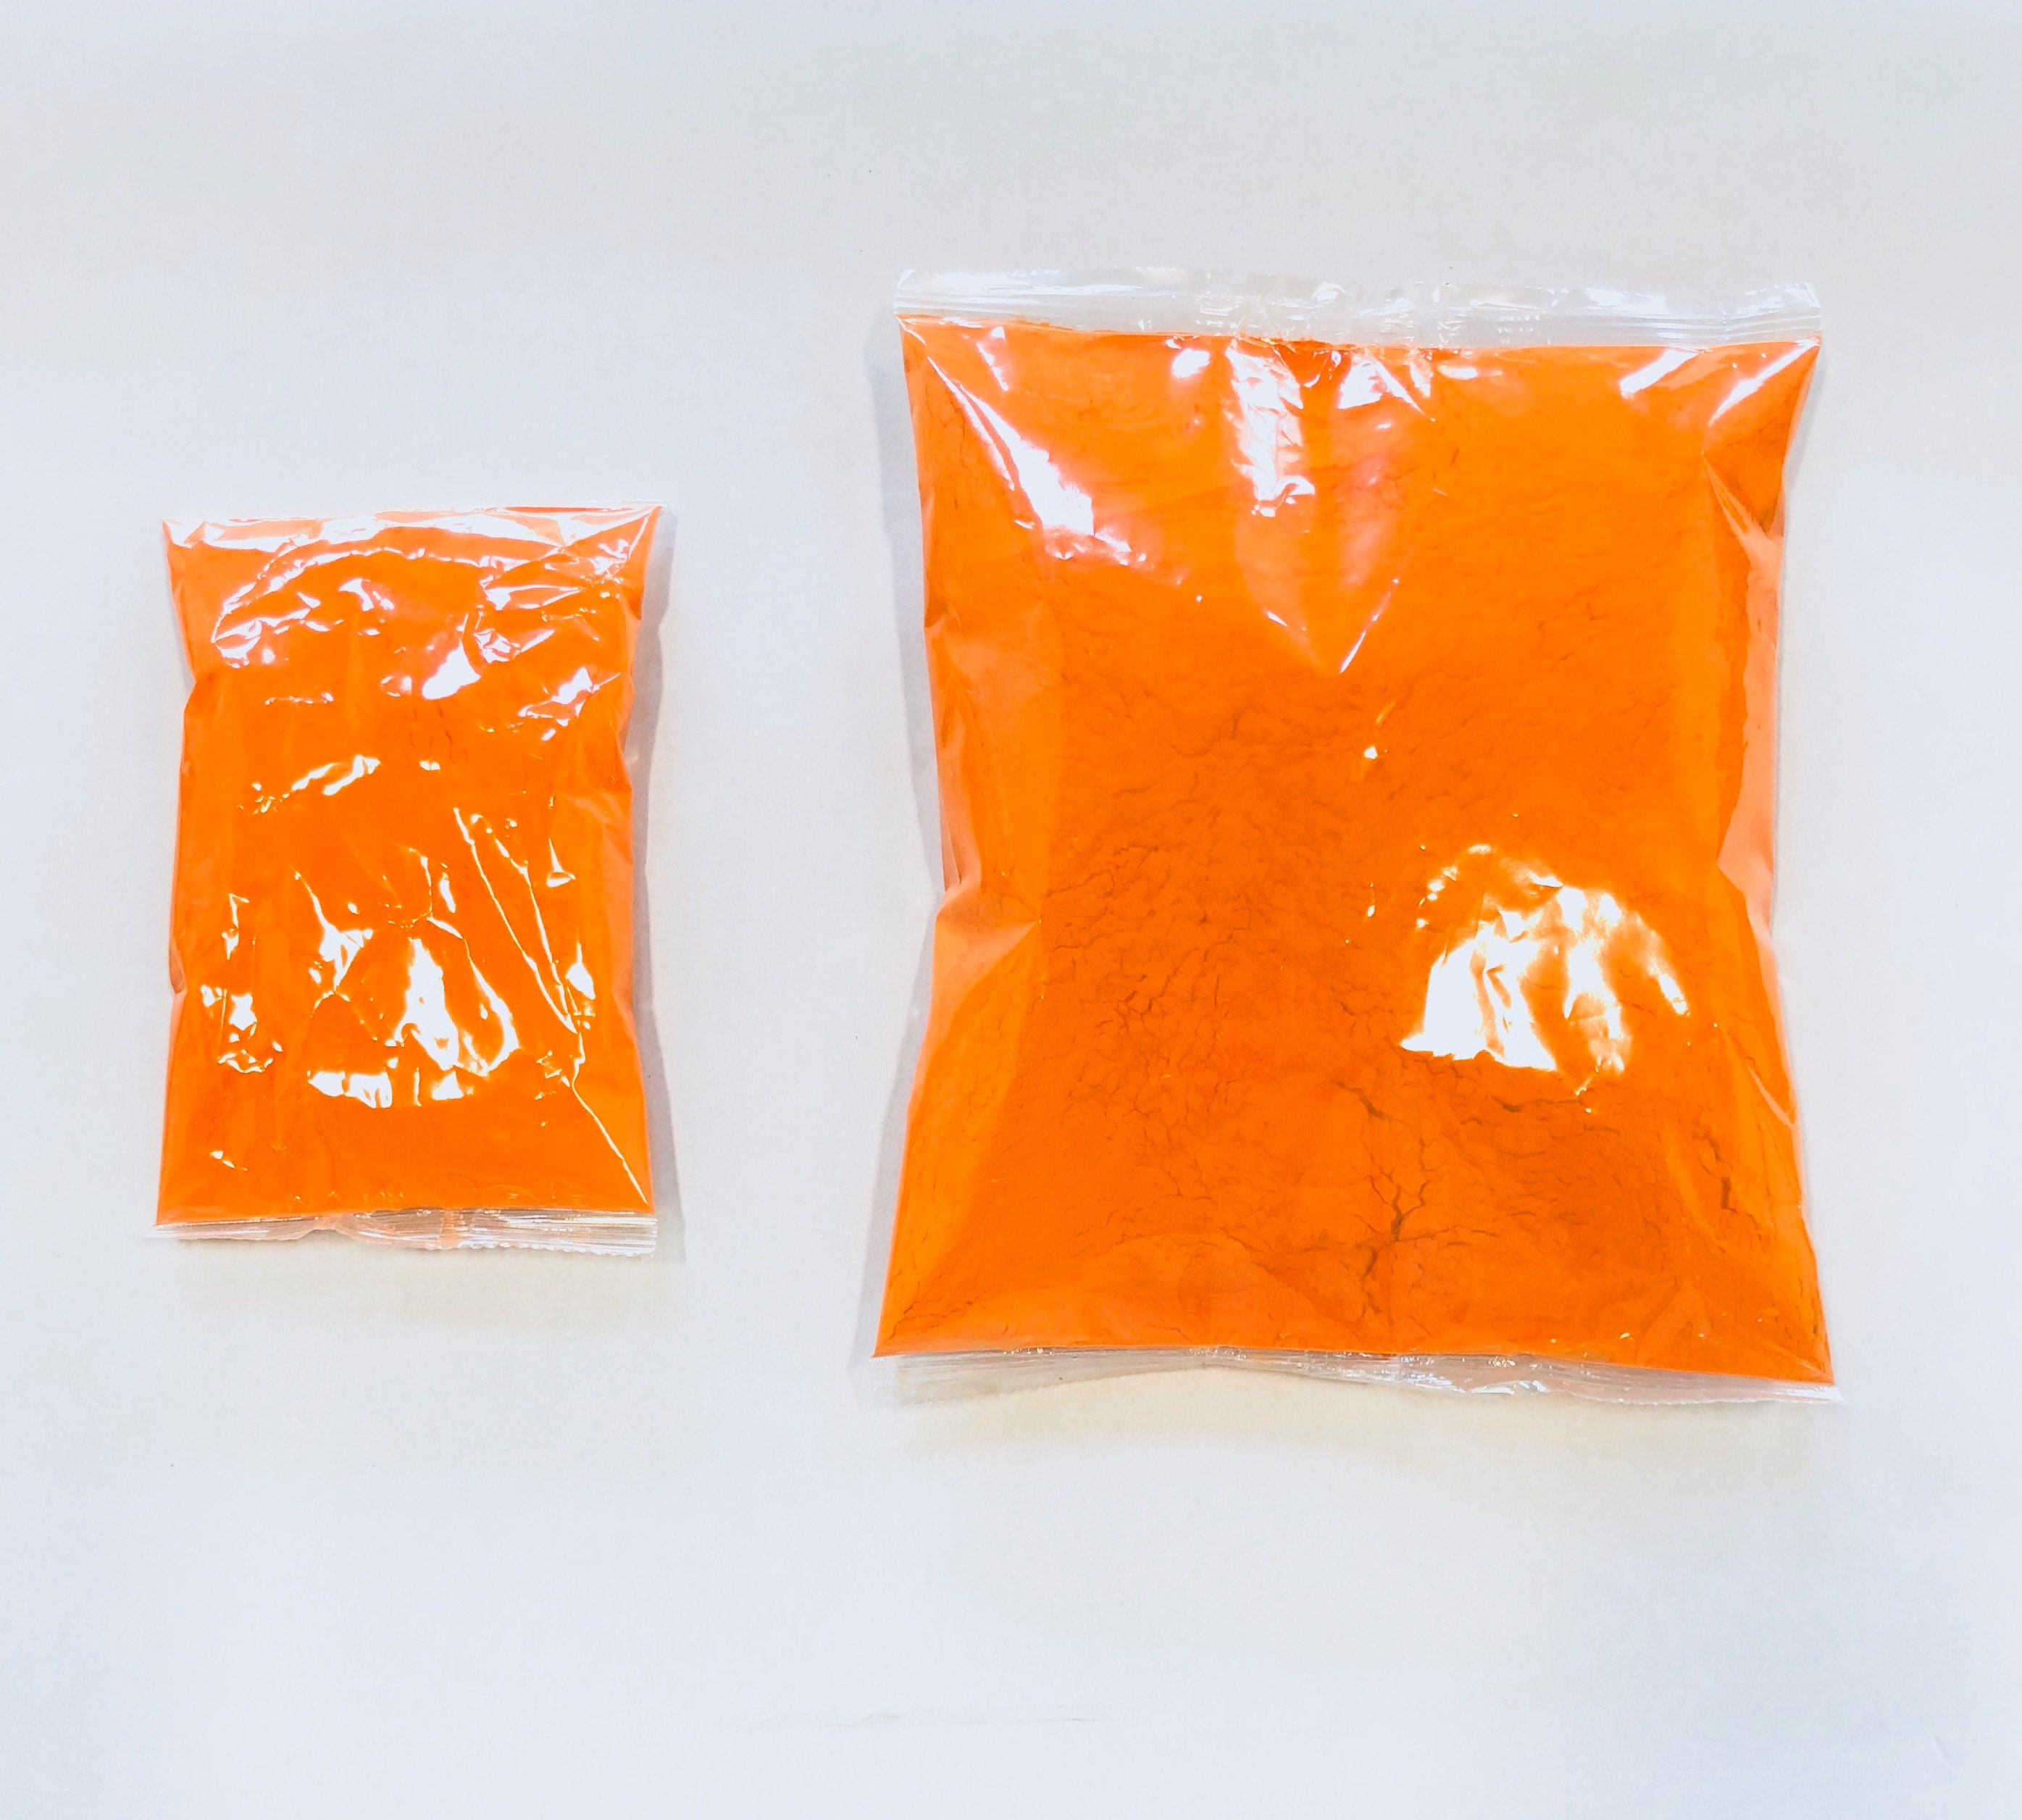 Paquete de 10 unidades de colores en polvo Holi de 1 lb Cada paquete  contiene los colores: rojo, amarillo, azul marino, verde, naranja, púrpura,  rosa